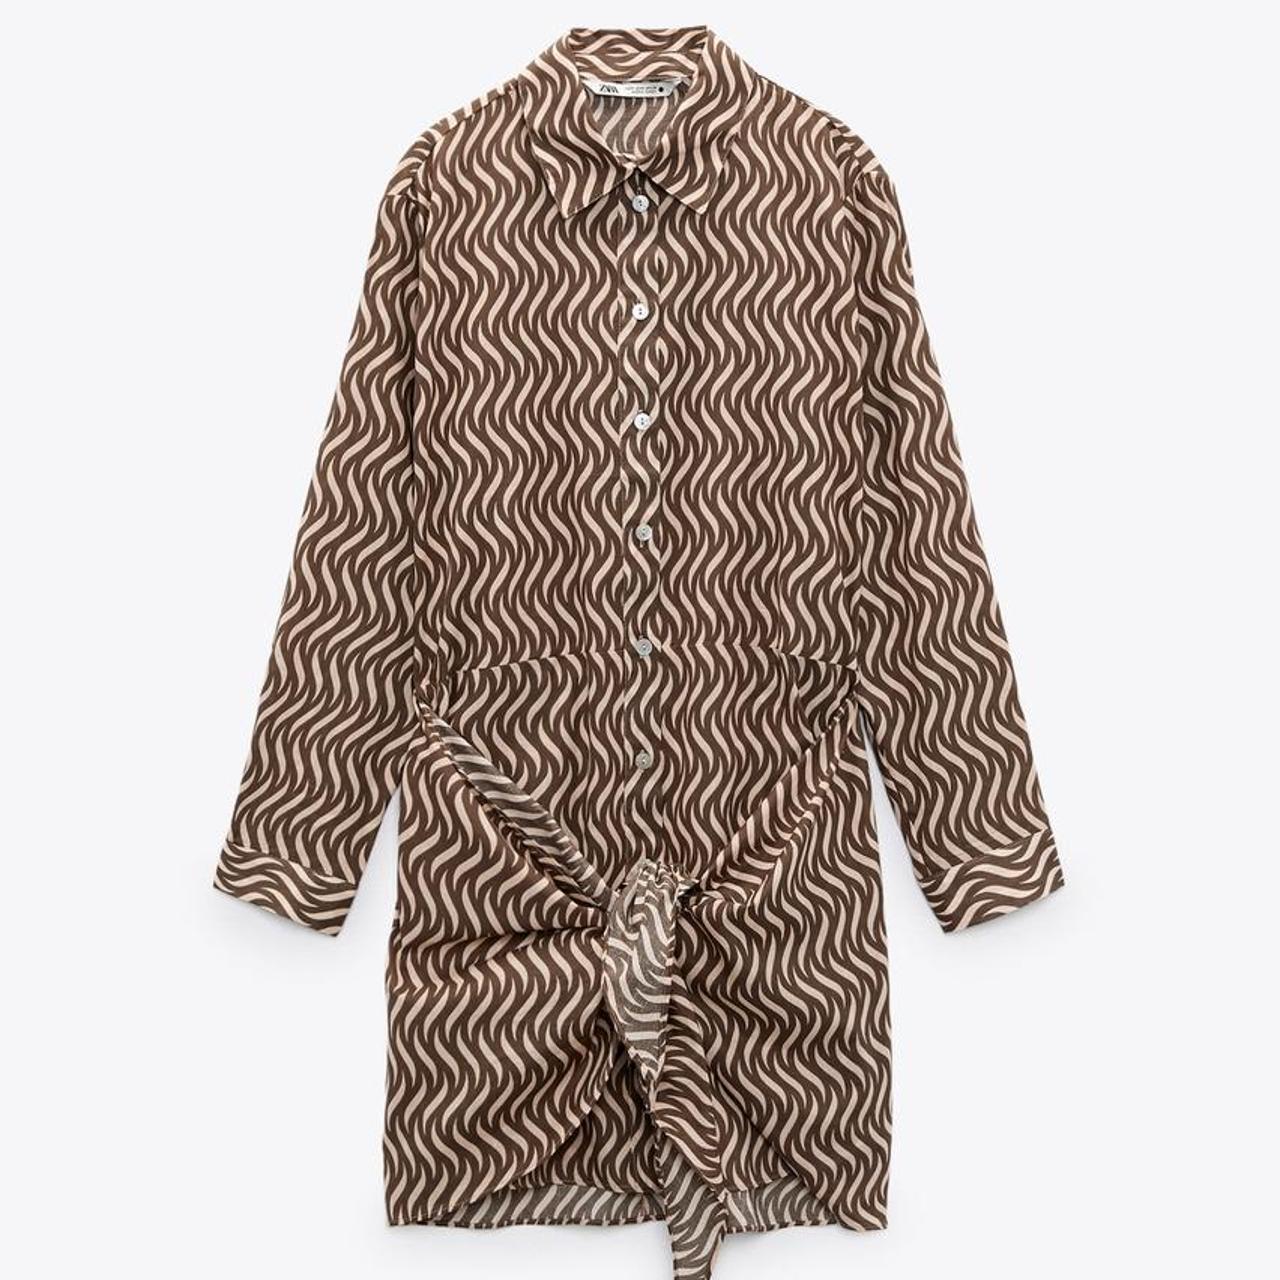 Zara sand pattern knot shirt dress - Depop